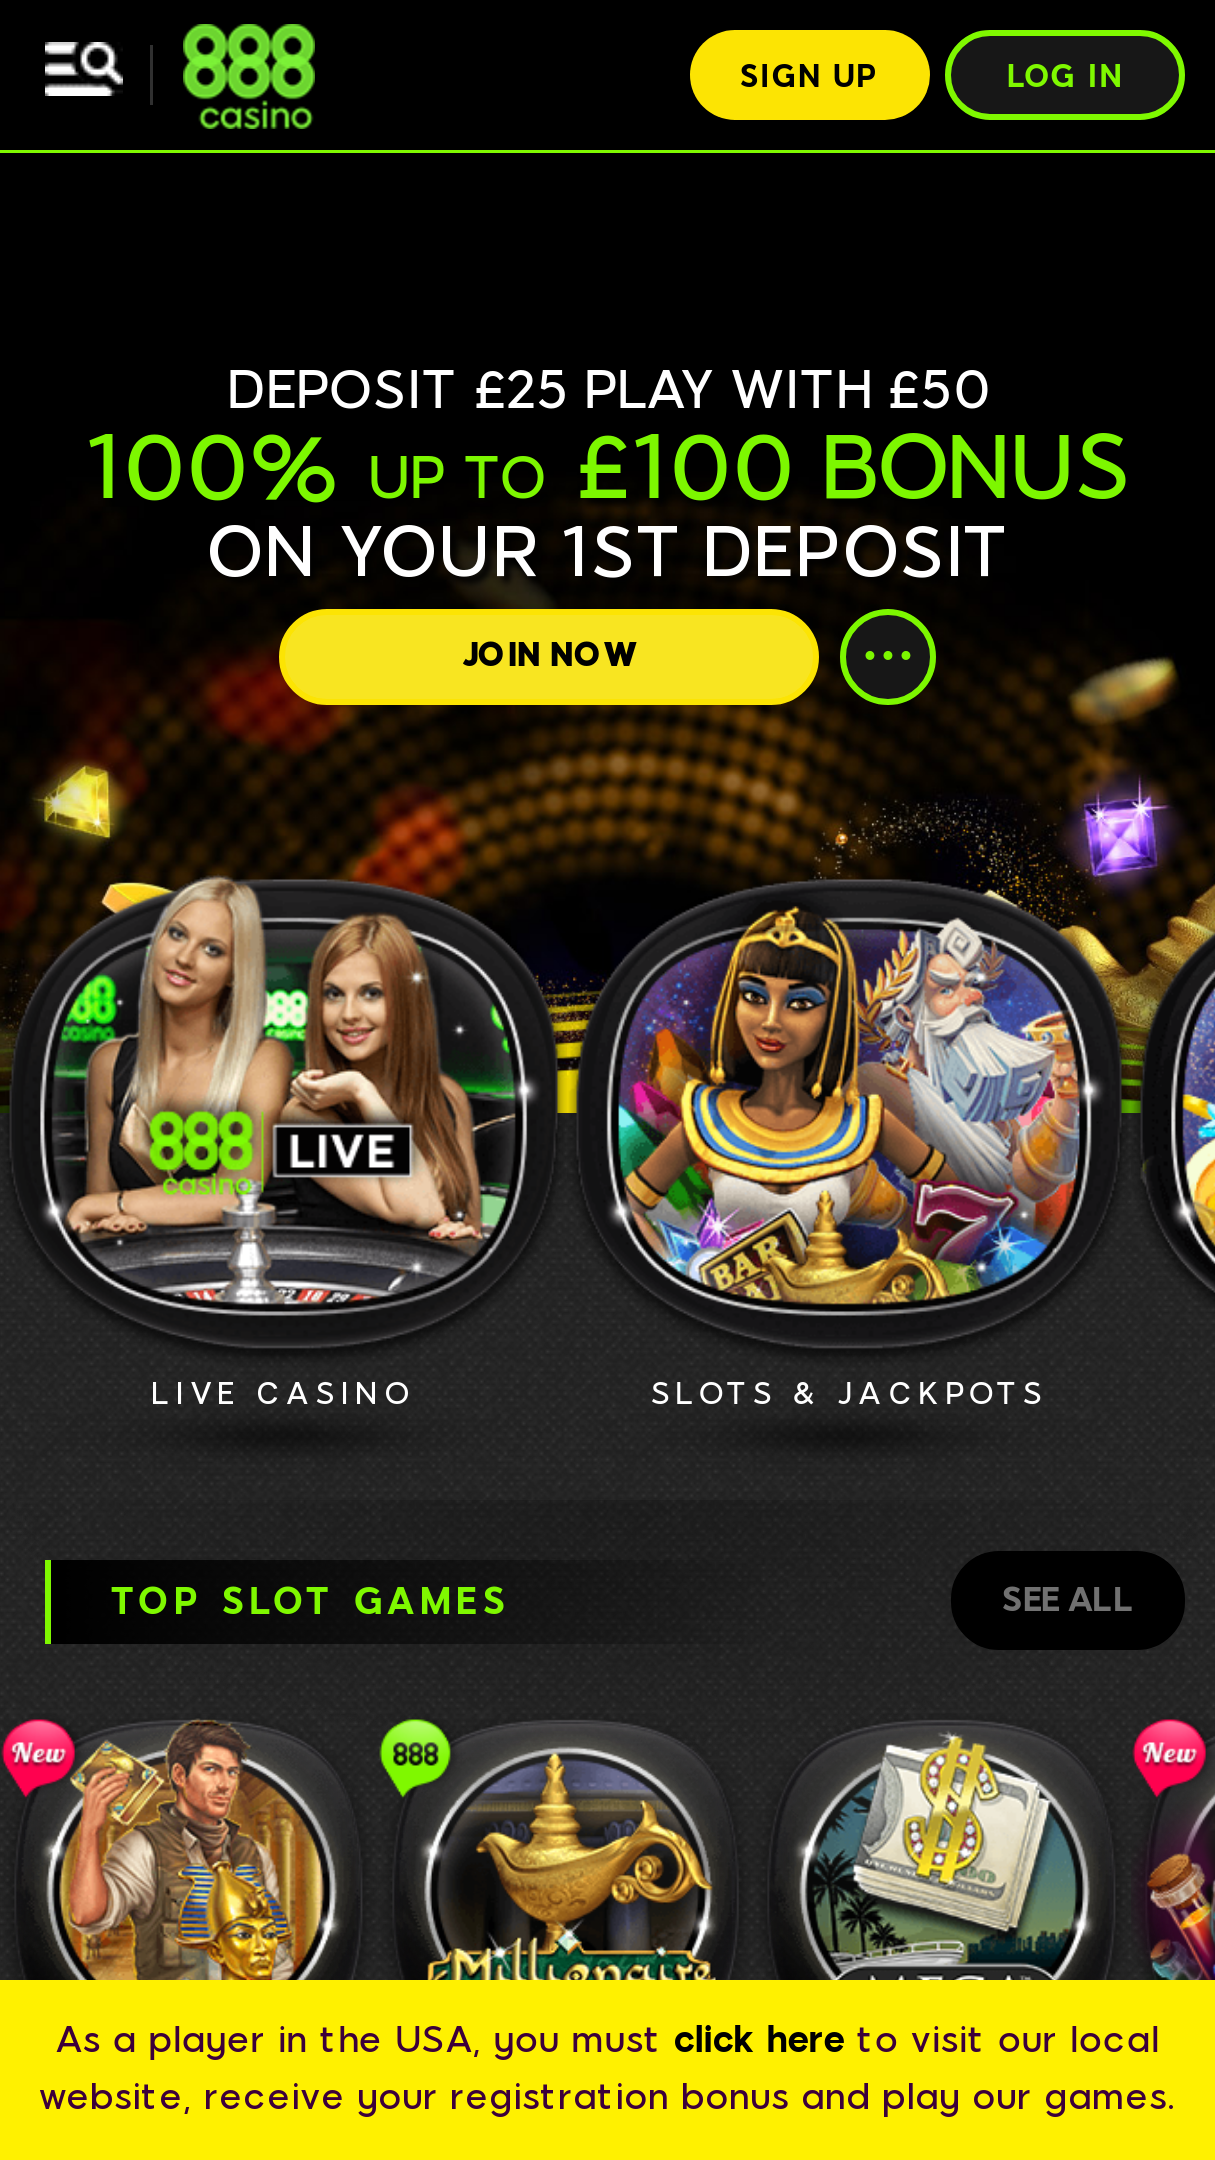 888 casino android app download спорт ставки тактика